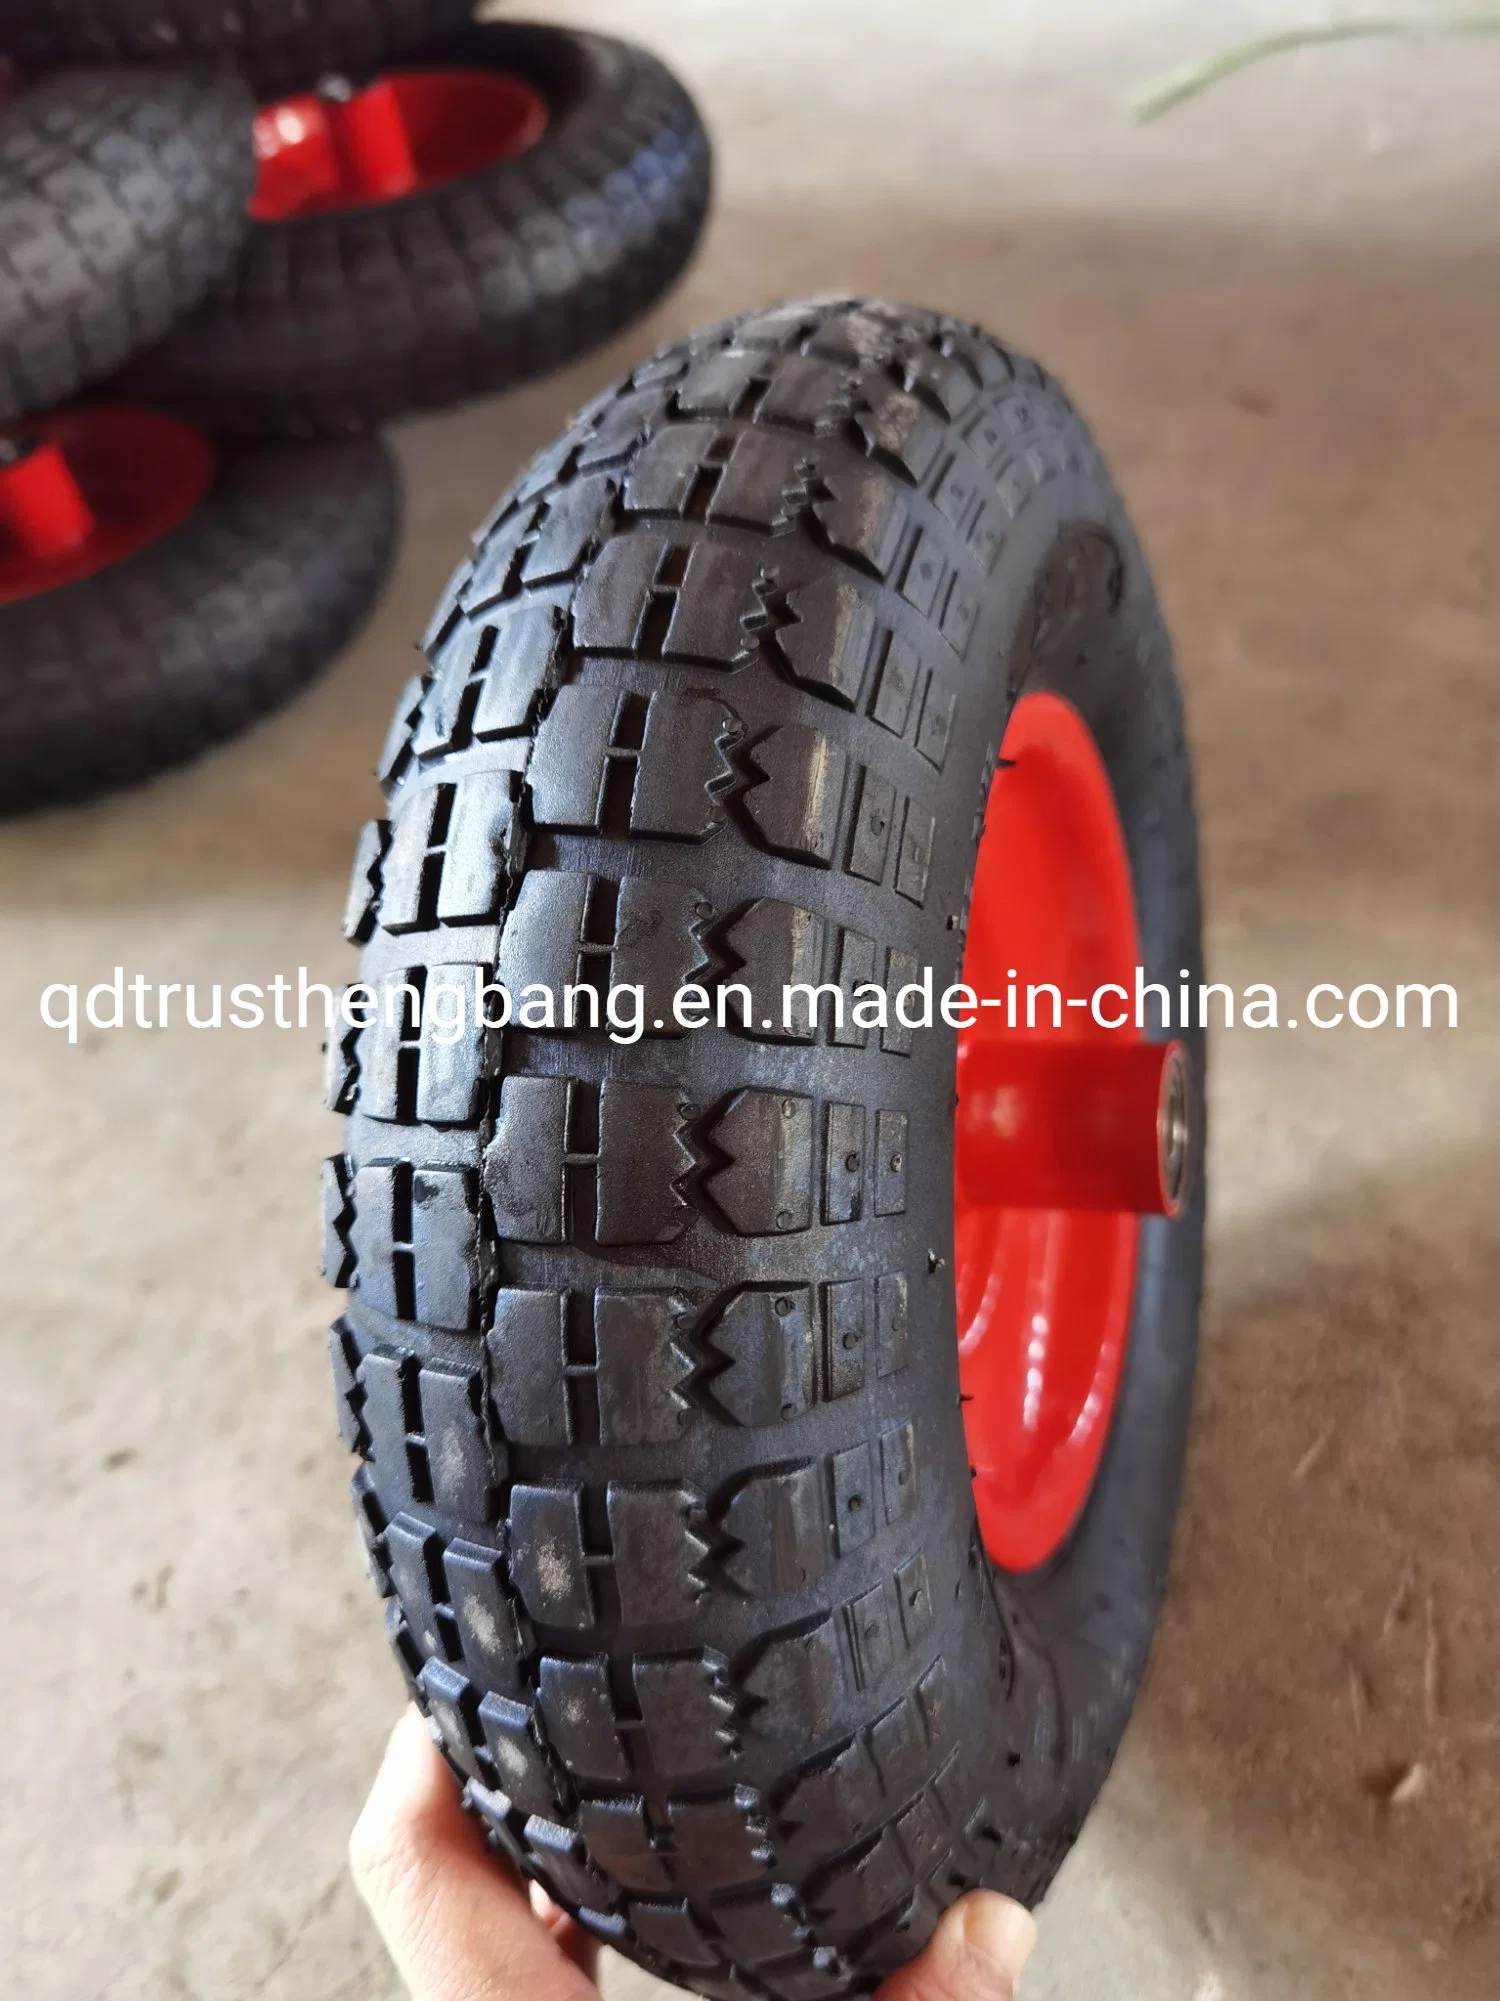 Hochwertige 13" Kombi Reifen Trolley Rad für Großhandel mit Fabrikpreis